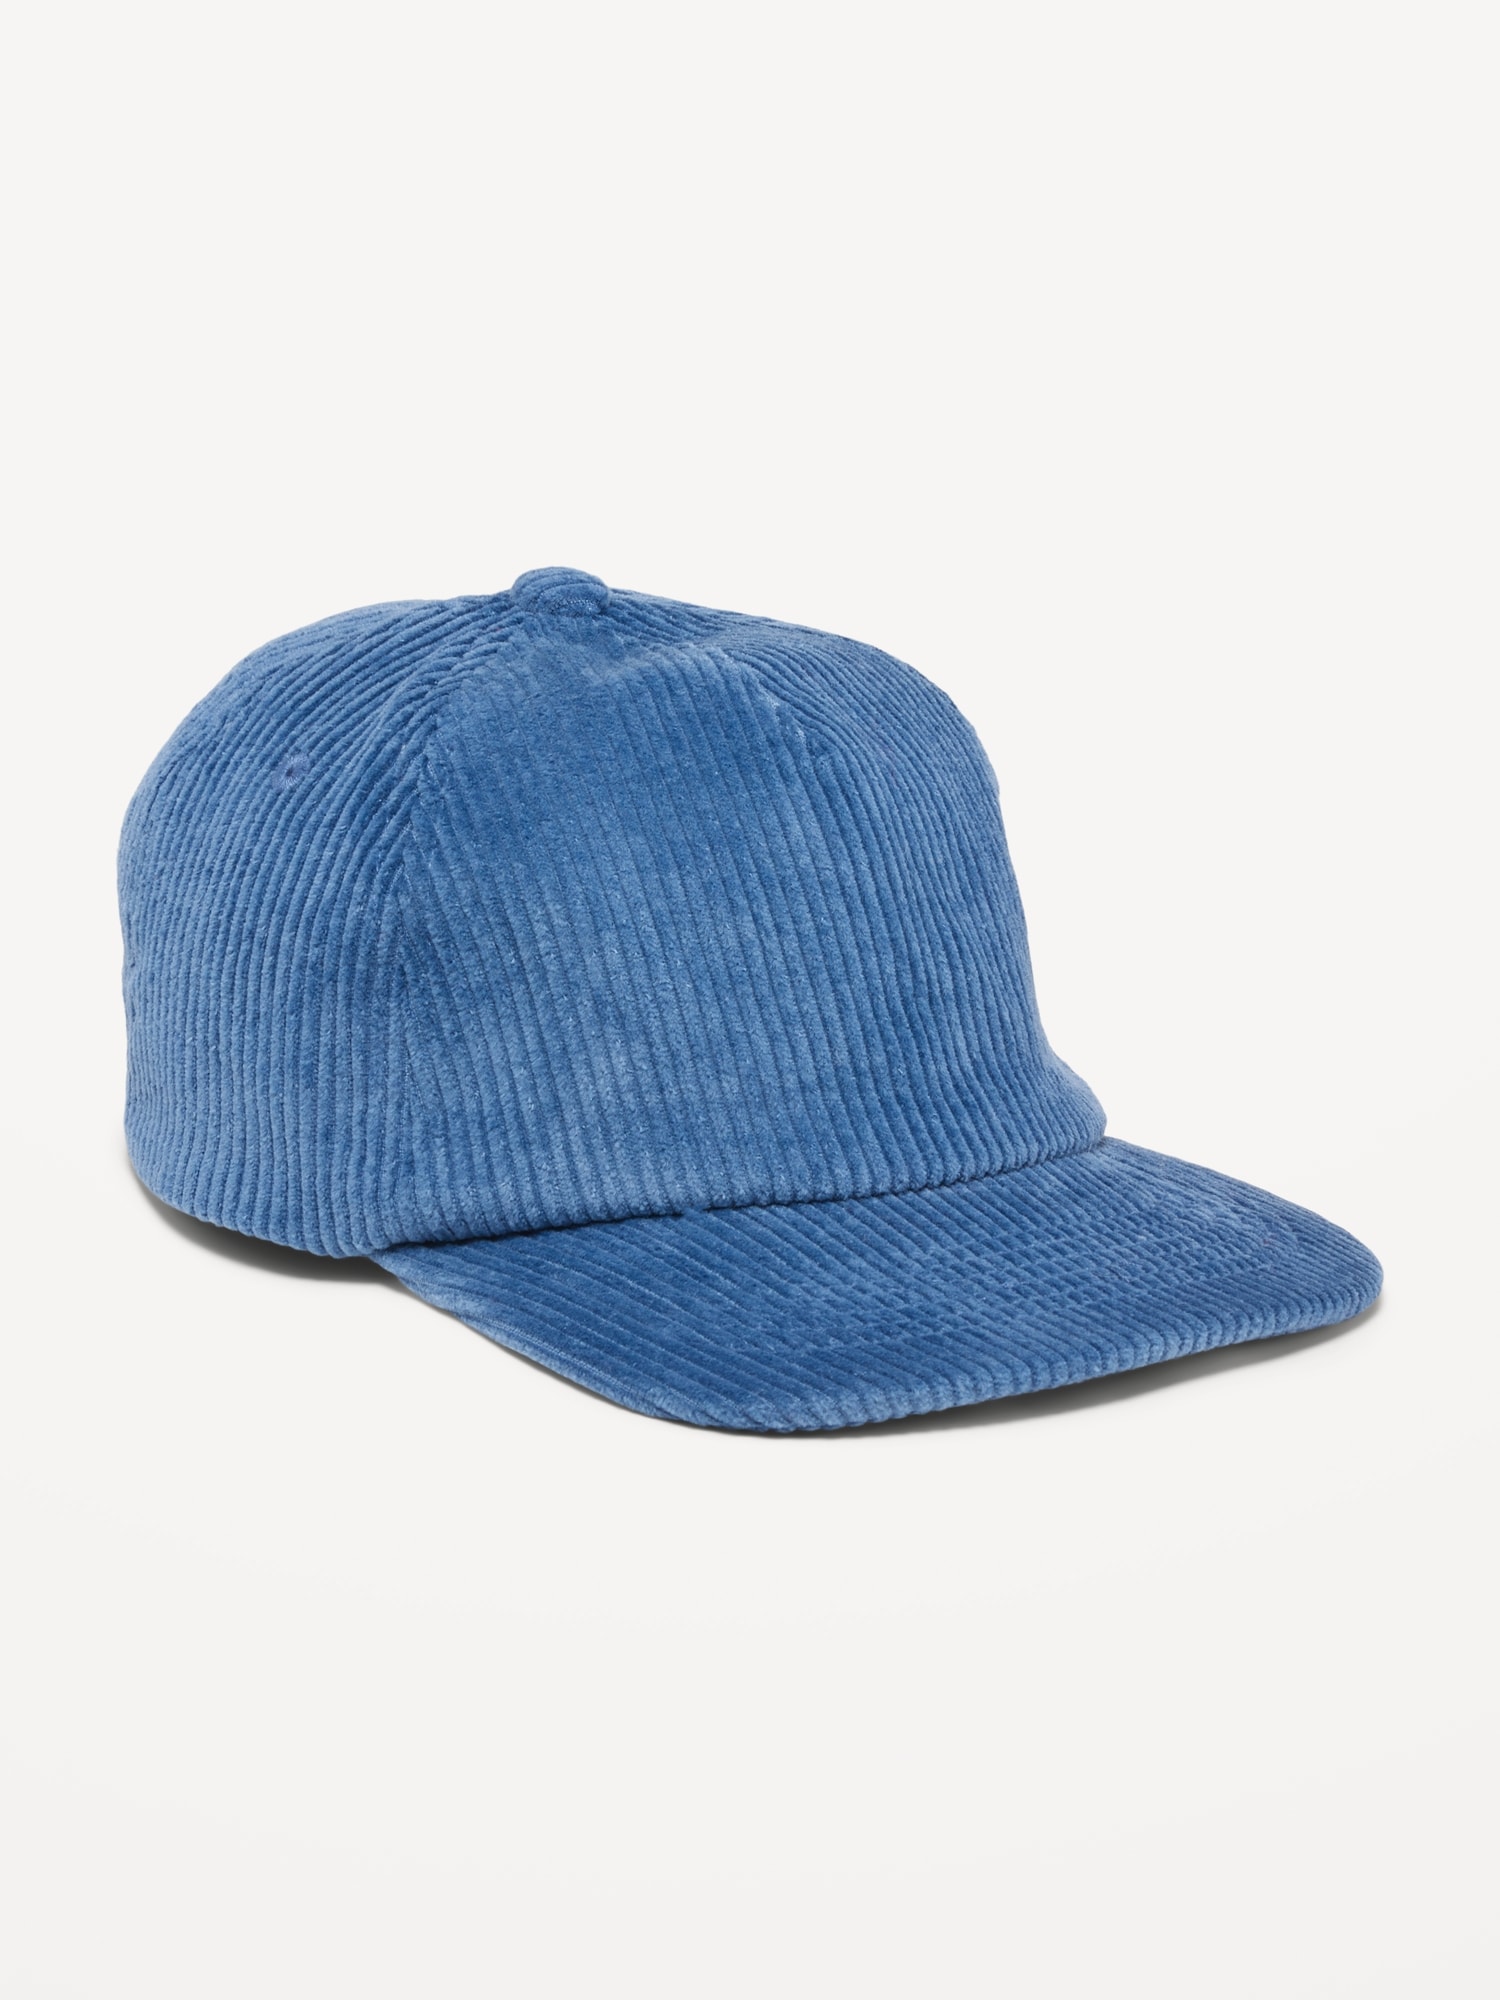 Gender-Neutral Flat-Brim Corduroy Trucker Hat for Kids